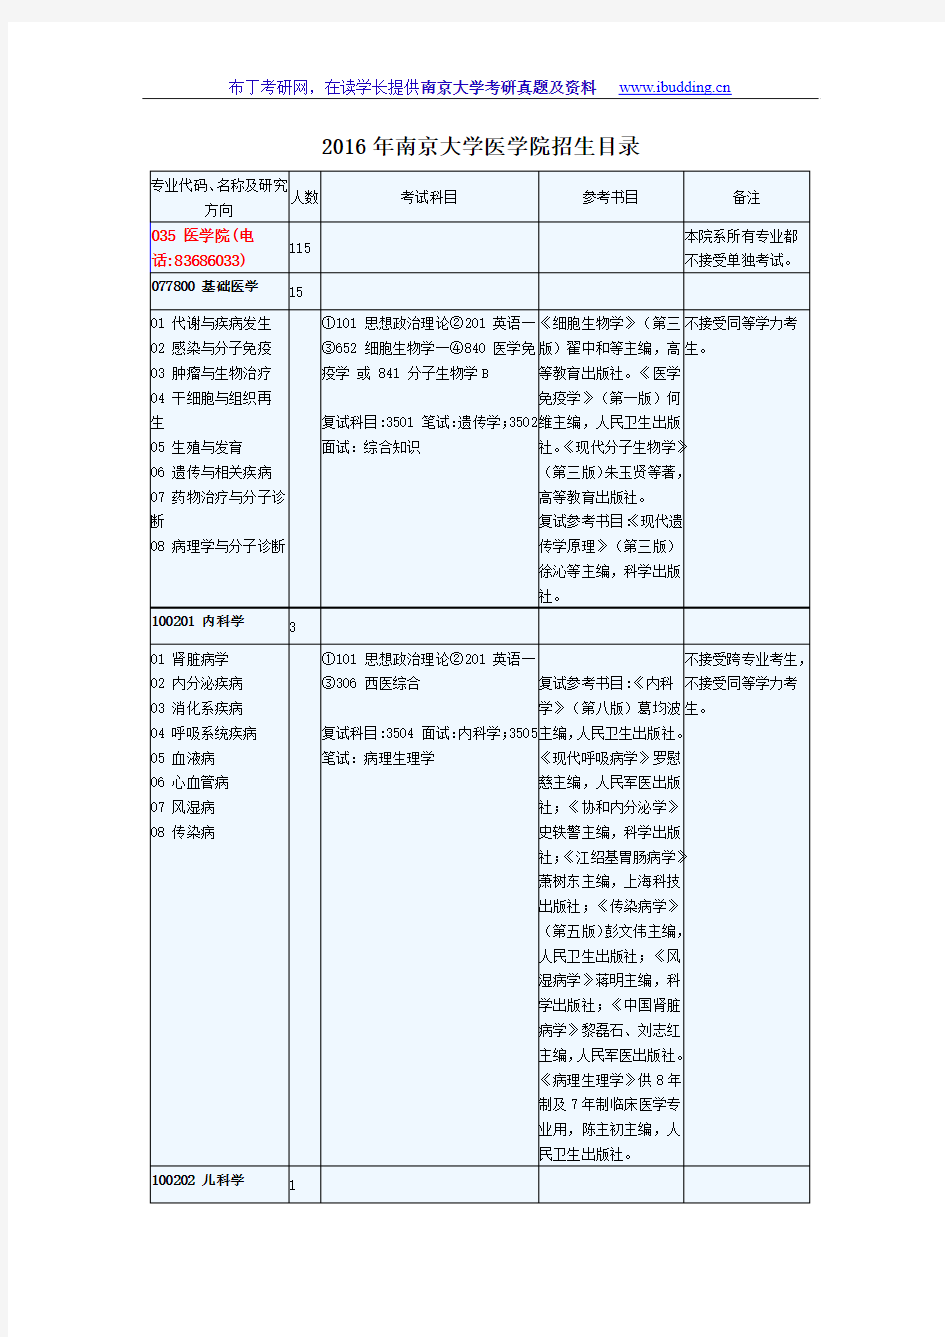 2016年南京大学南大医学院 考研招生目录 考试科目及范围 录取人数汇总